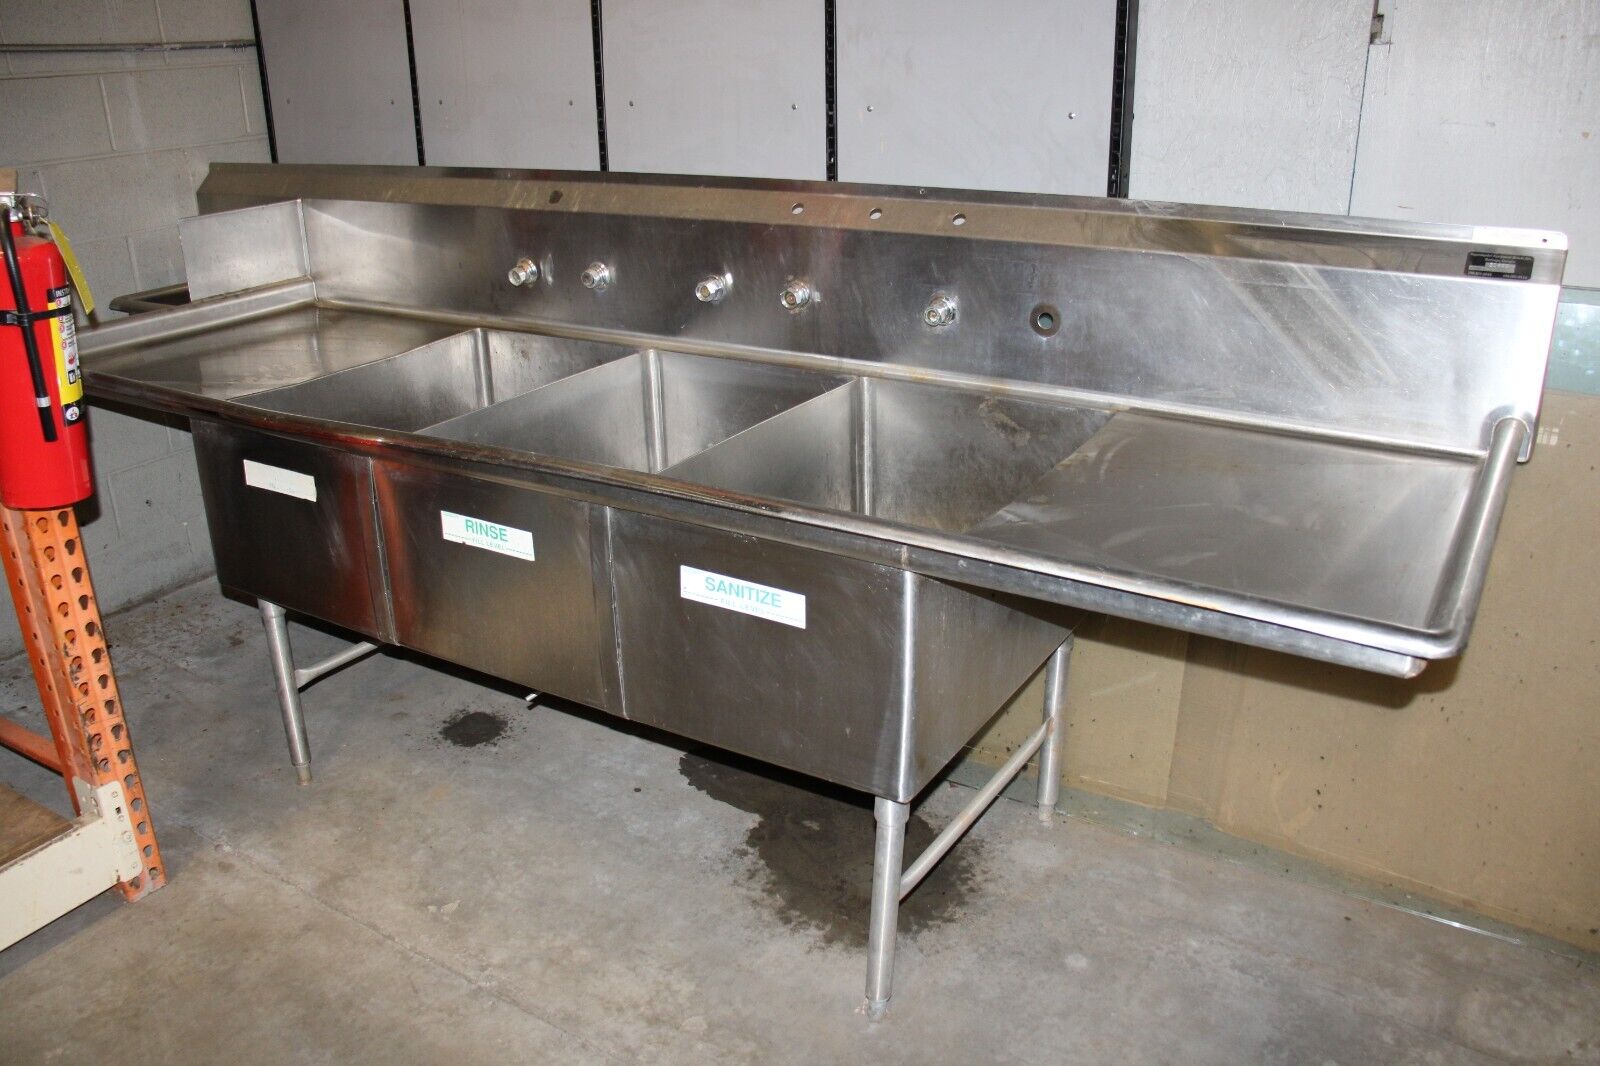 3 Bin Stainless Steel Commercial Sheet Pan Sink